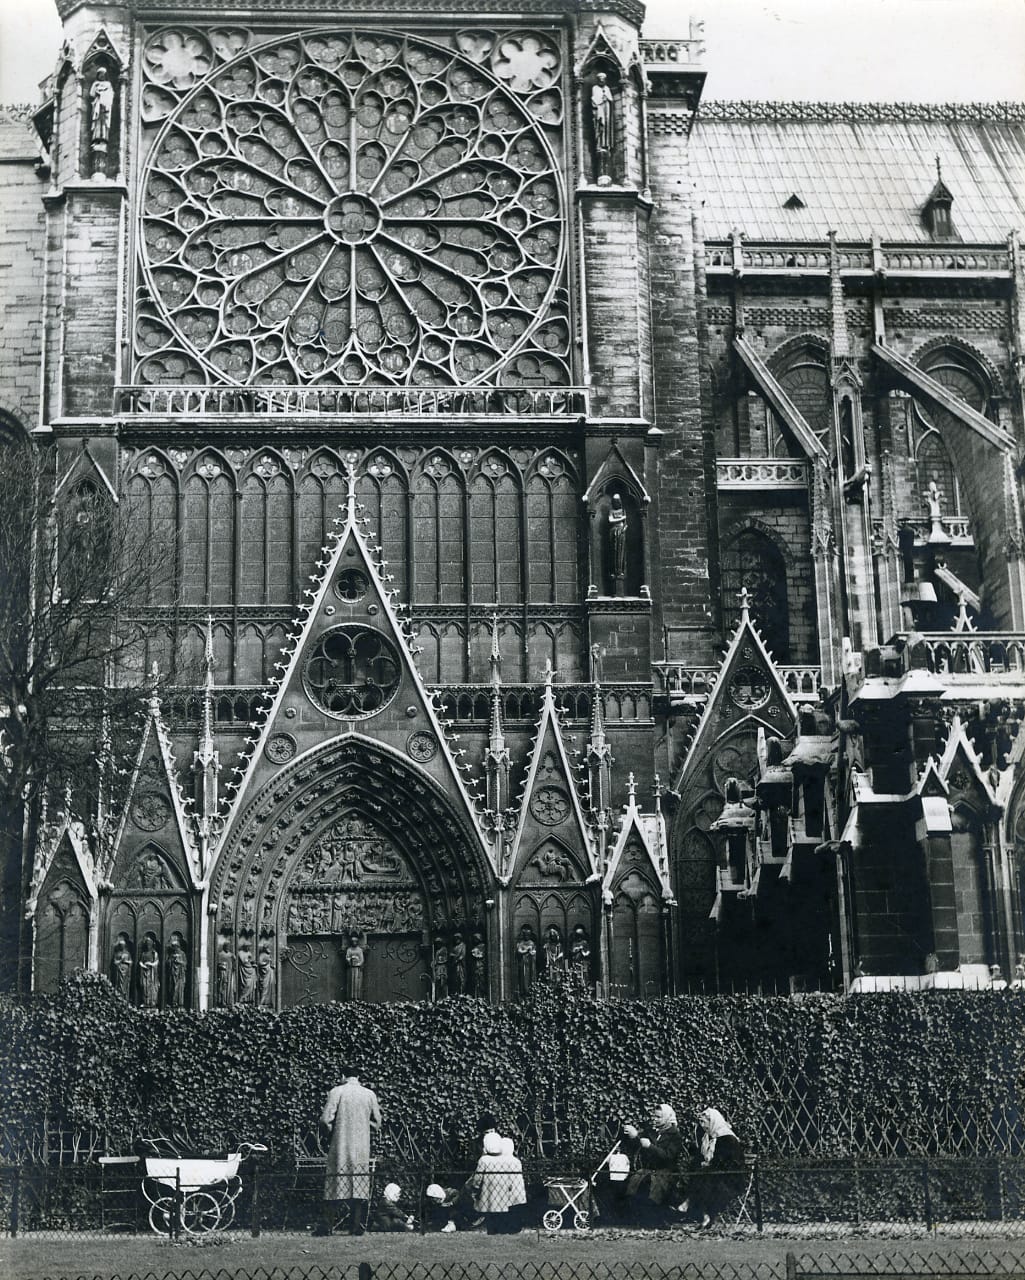 Südliches Querschiff, 1968: Mit 32 Metern sind die Querschiffe der Kirche deutlich höher als die Seitenschiffe. An diesem Teil von Notre-Dame ist klar die gotische Prägung der Kathedrale zu sehen. Zahlreiche christliche Figuren sind neben den Türen des Querschiffs zu sehen. Zudem sind über den Türbogen biblische Szenen dargestellt.